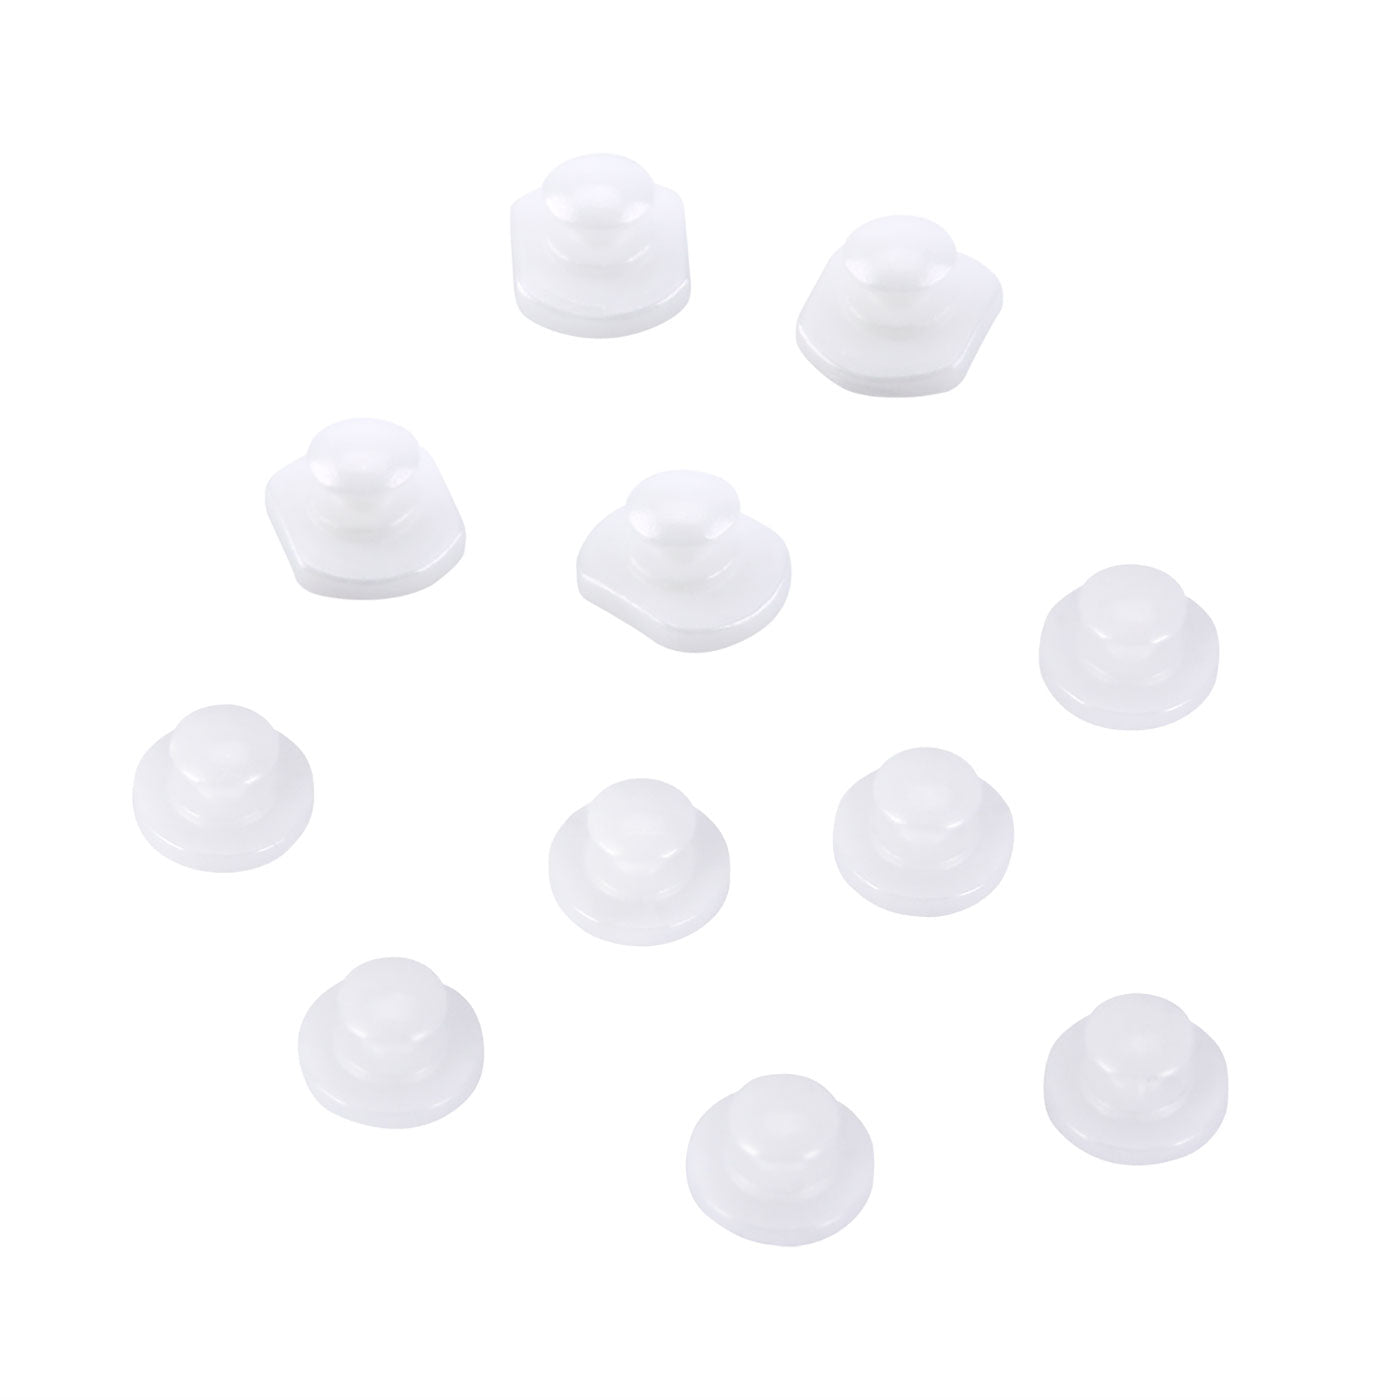 AZDENT Dental Lingual Button Bondable Composite Ceramic Round/Rectangular Base, 10pcs/Bag - azdentall.com